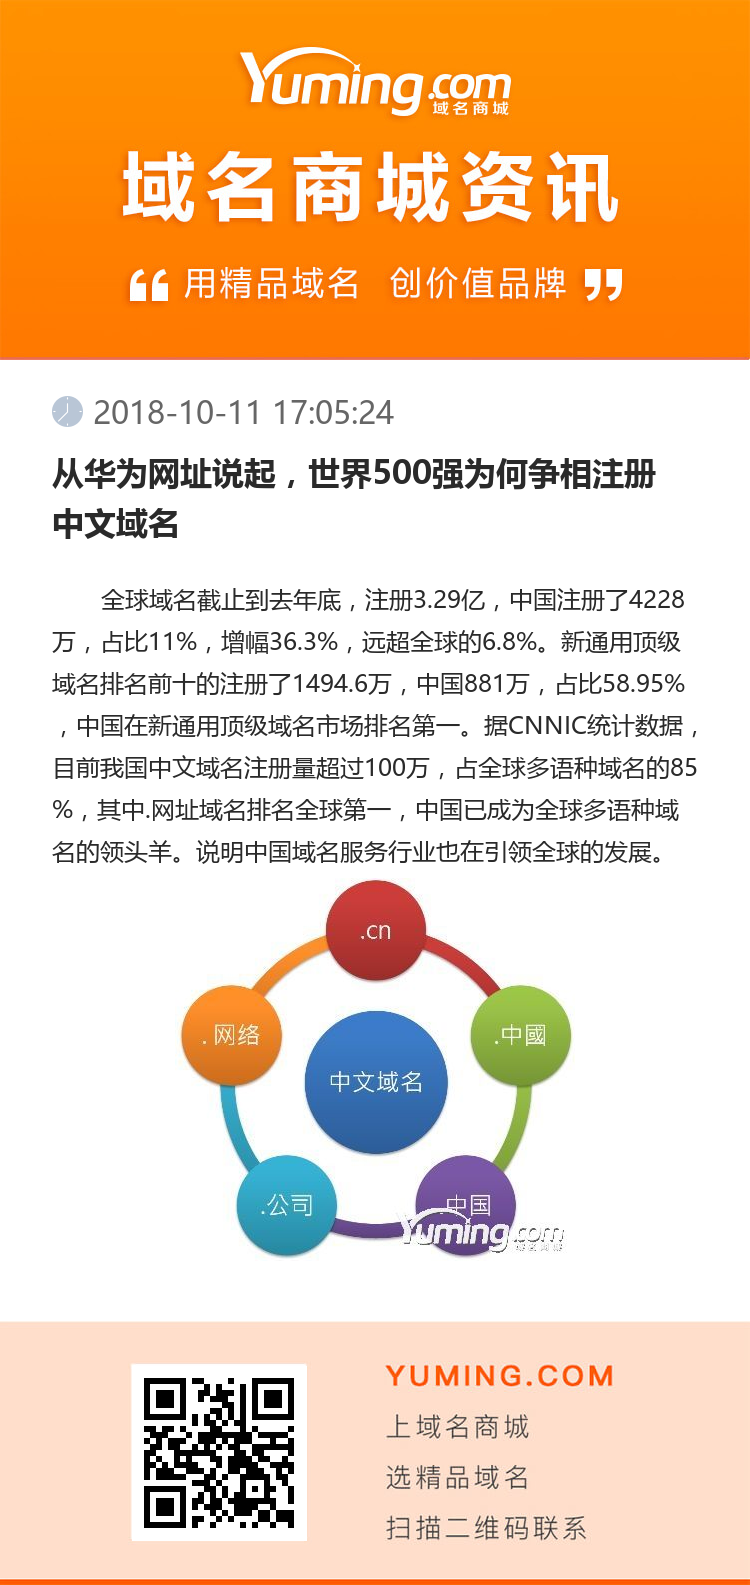 从华为网址说起，世界500强为何争相注册中文域名